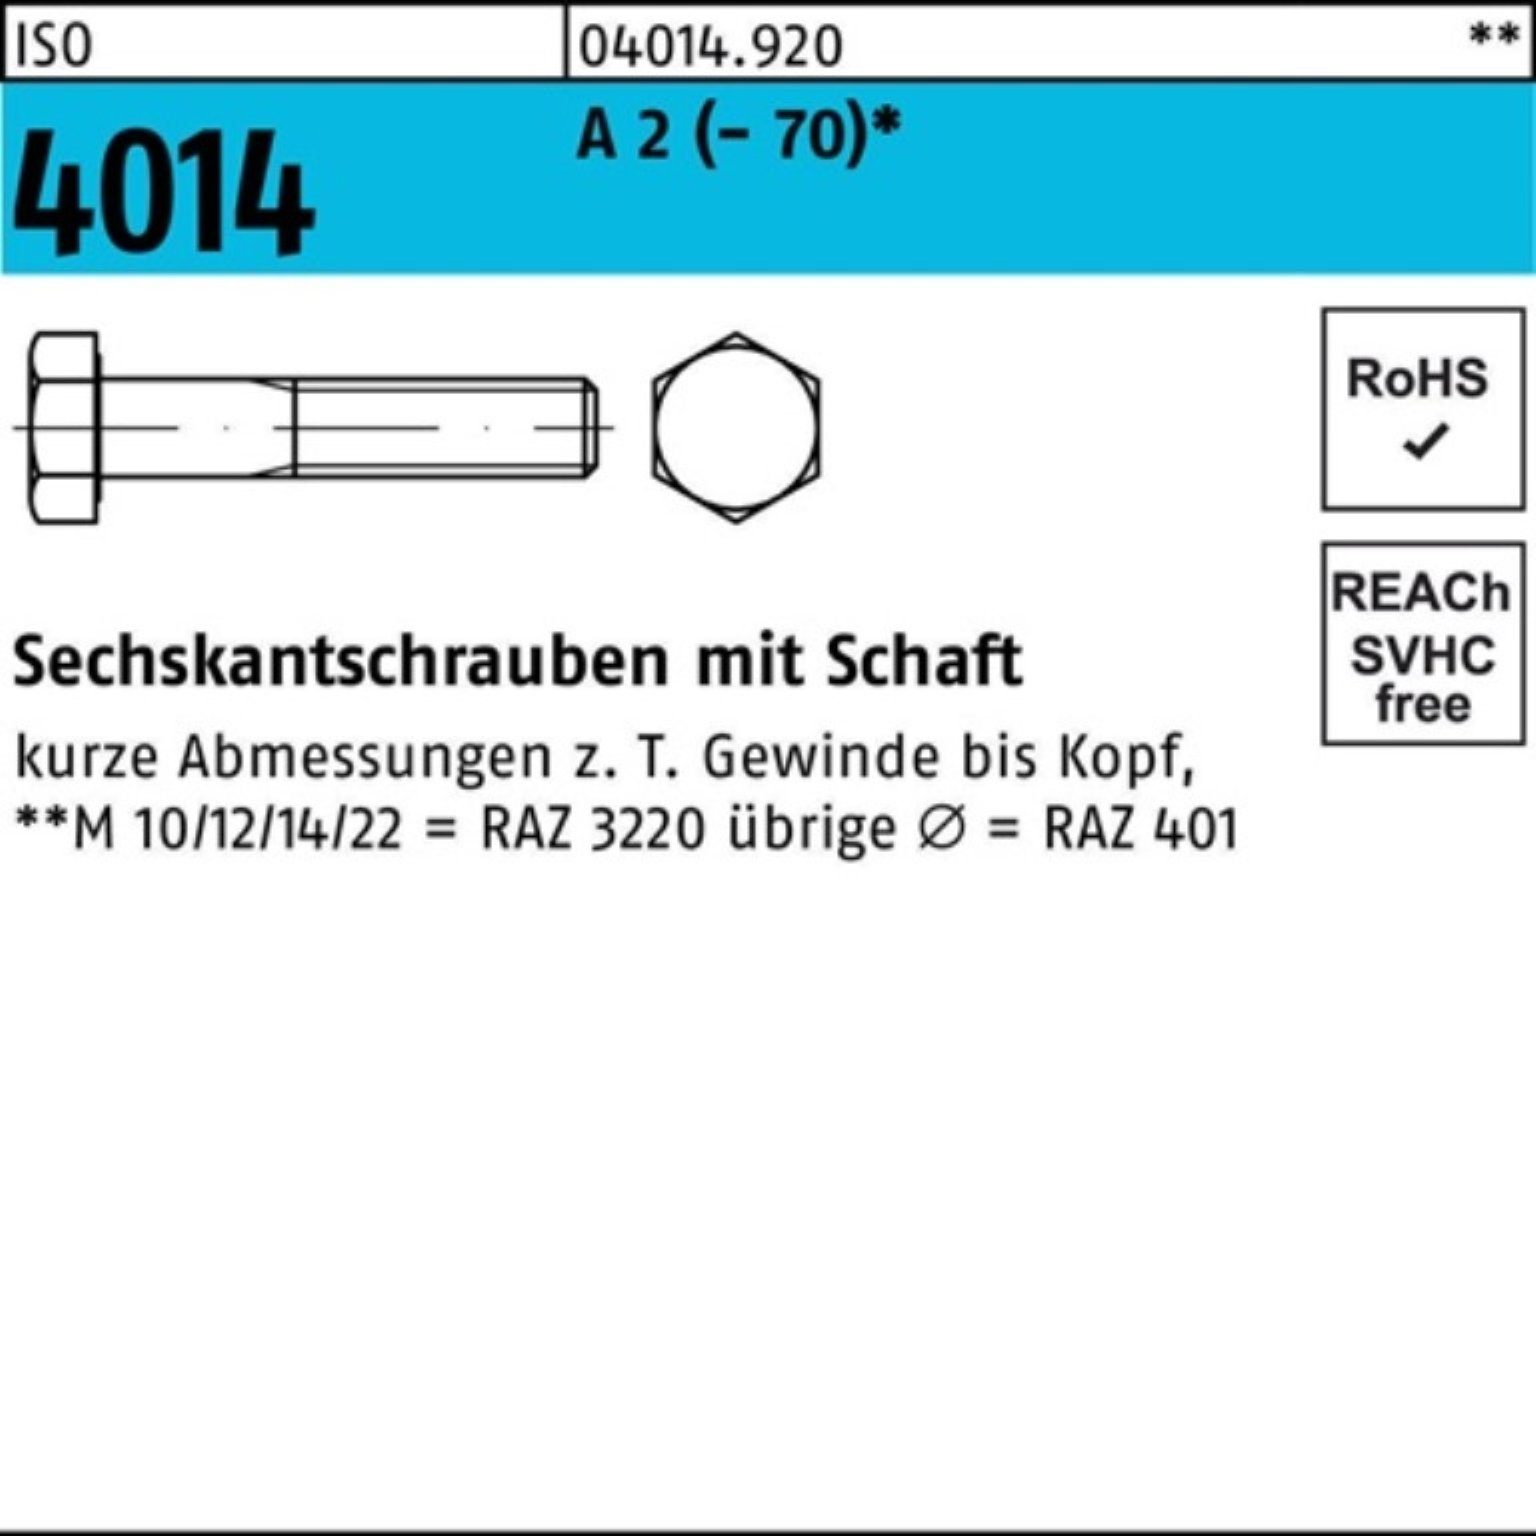 Bufab Sechskantschraube 100er Pack Sechskantschraube ISO 4014 Schaft M6x 70 A 2 (70) 100 St